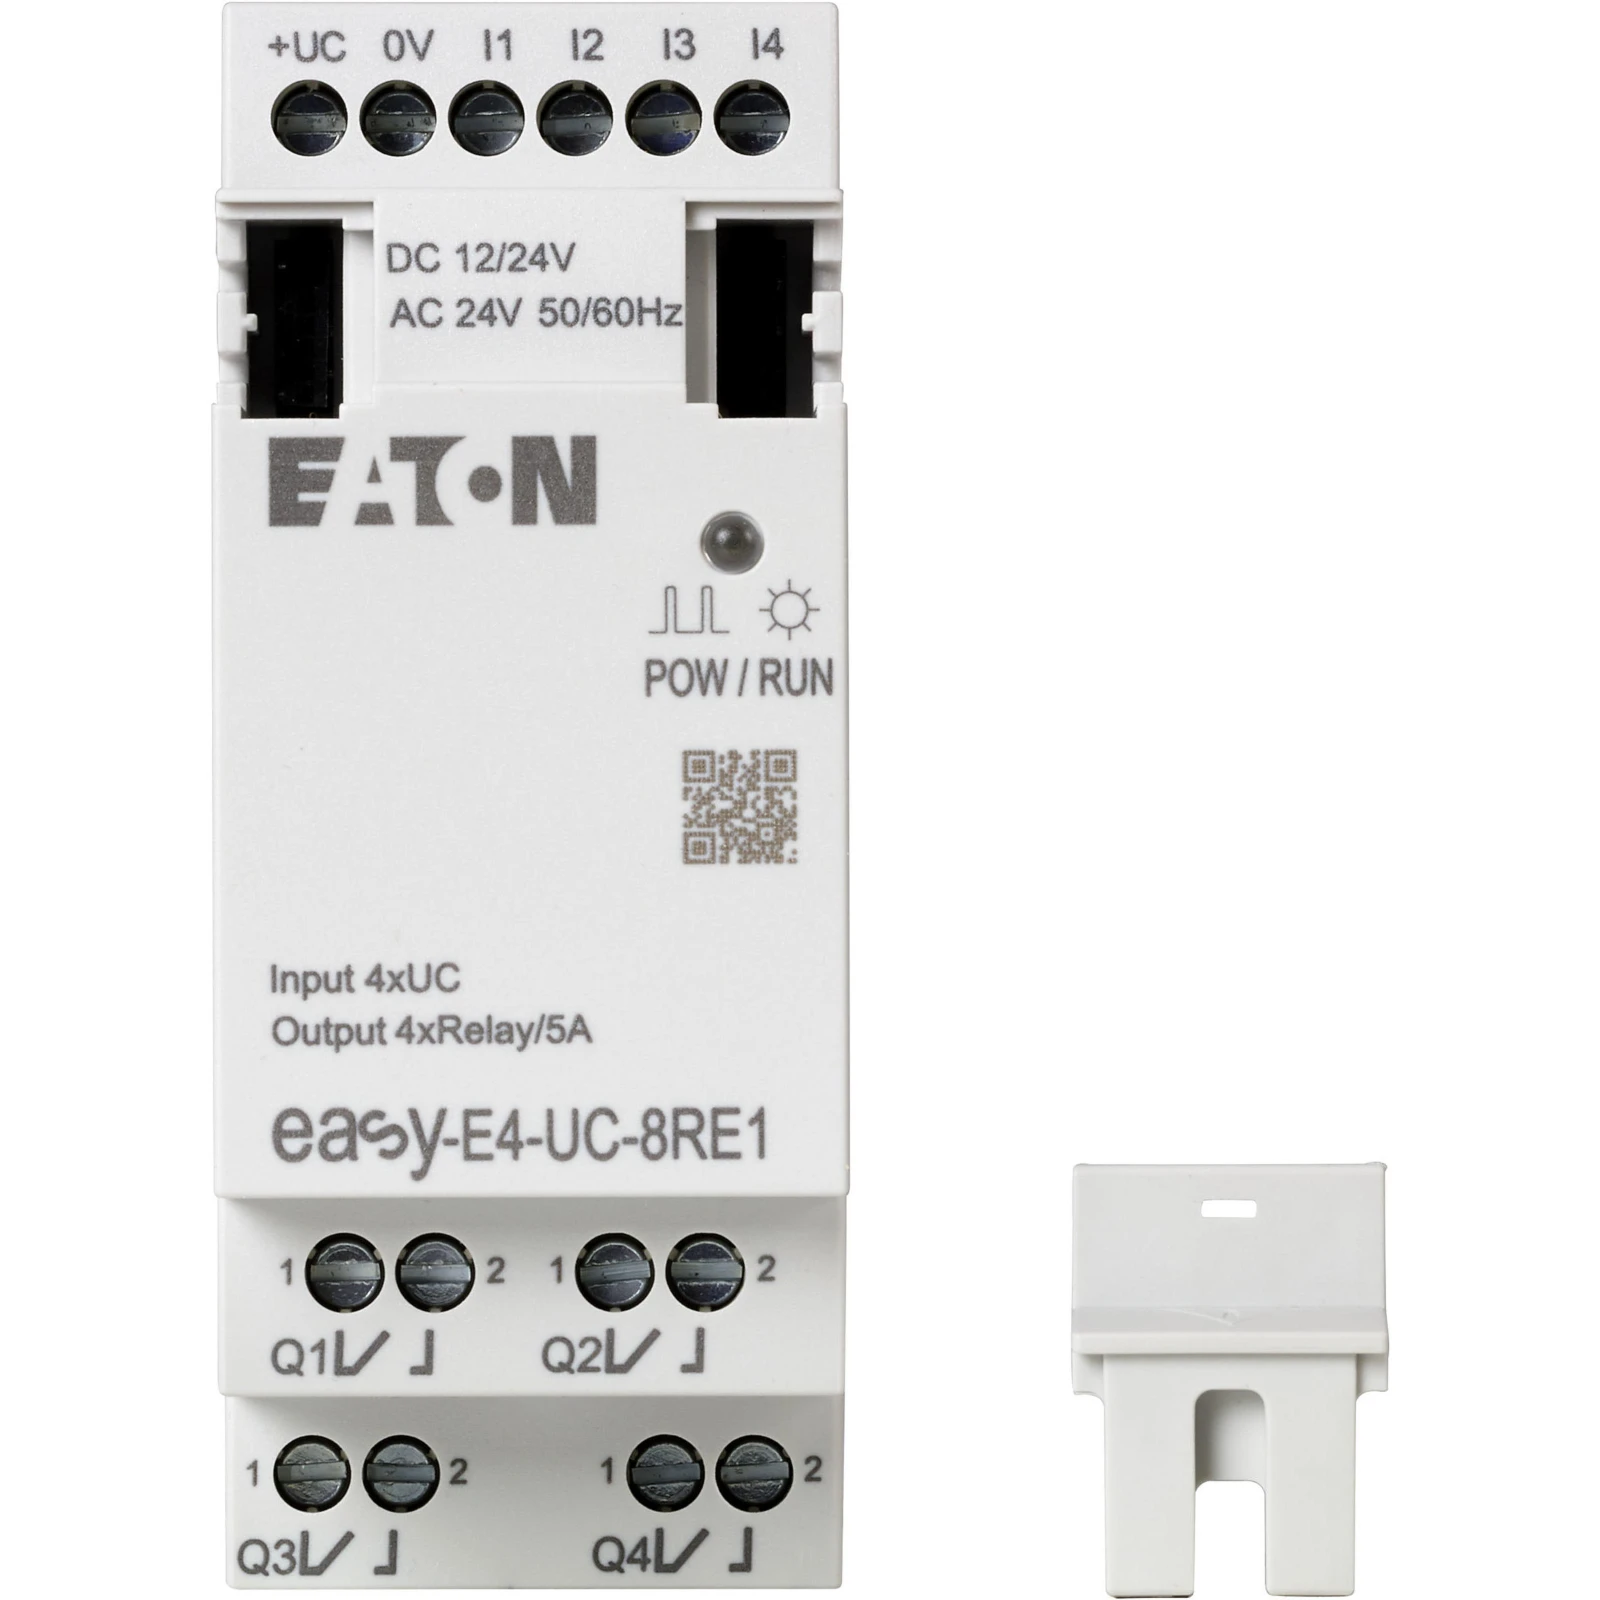 1651045 - Eaton EASY-E4-UC-8RE1